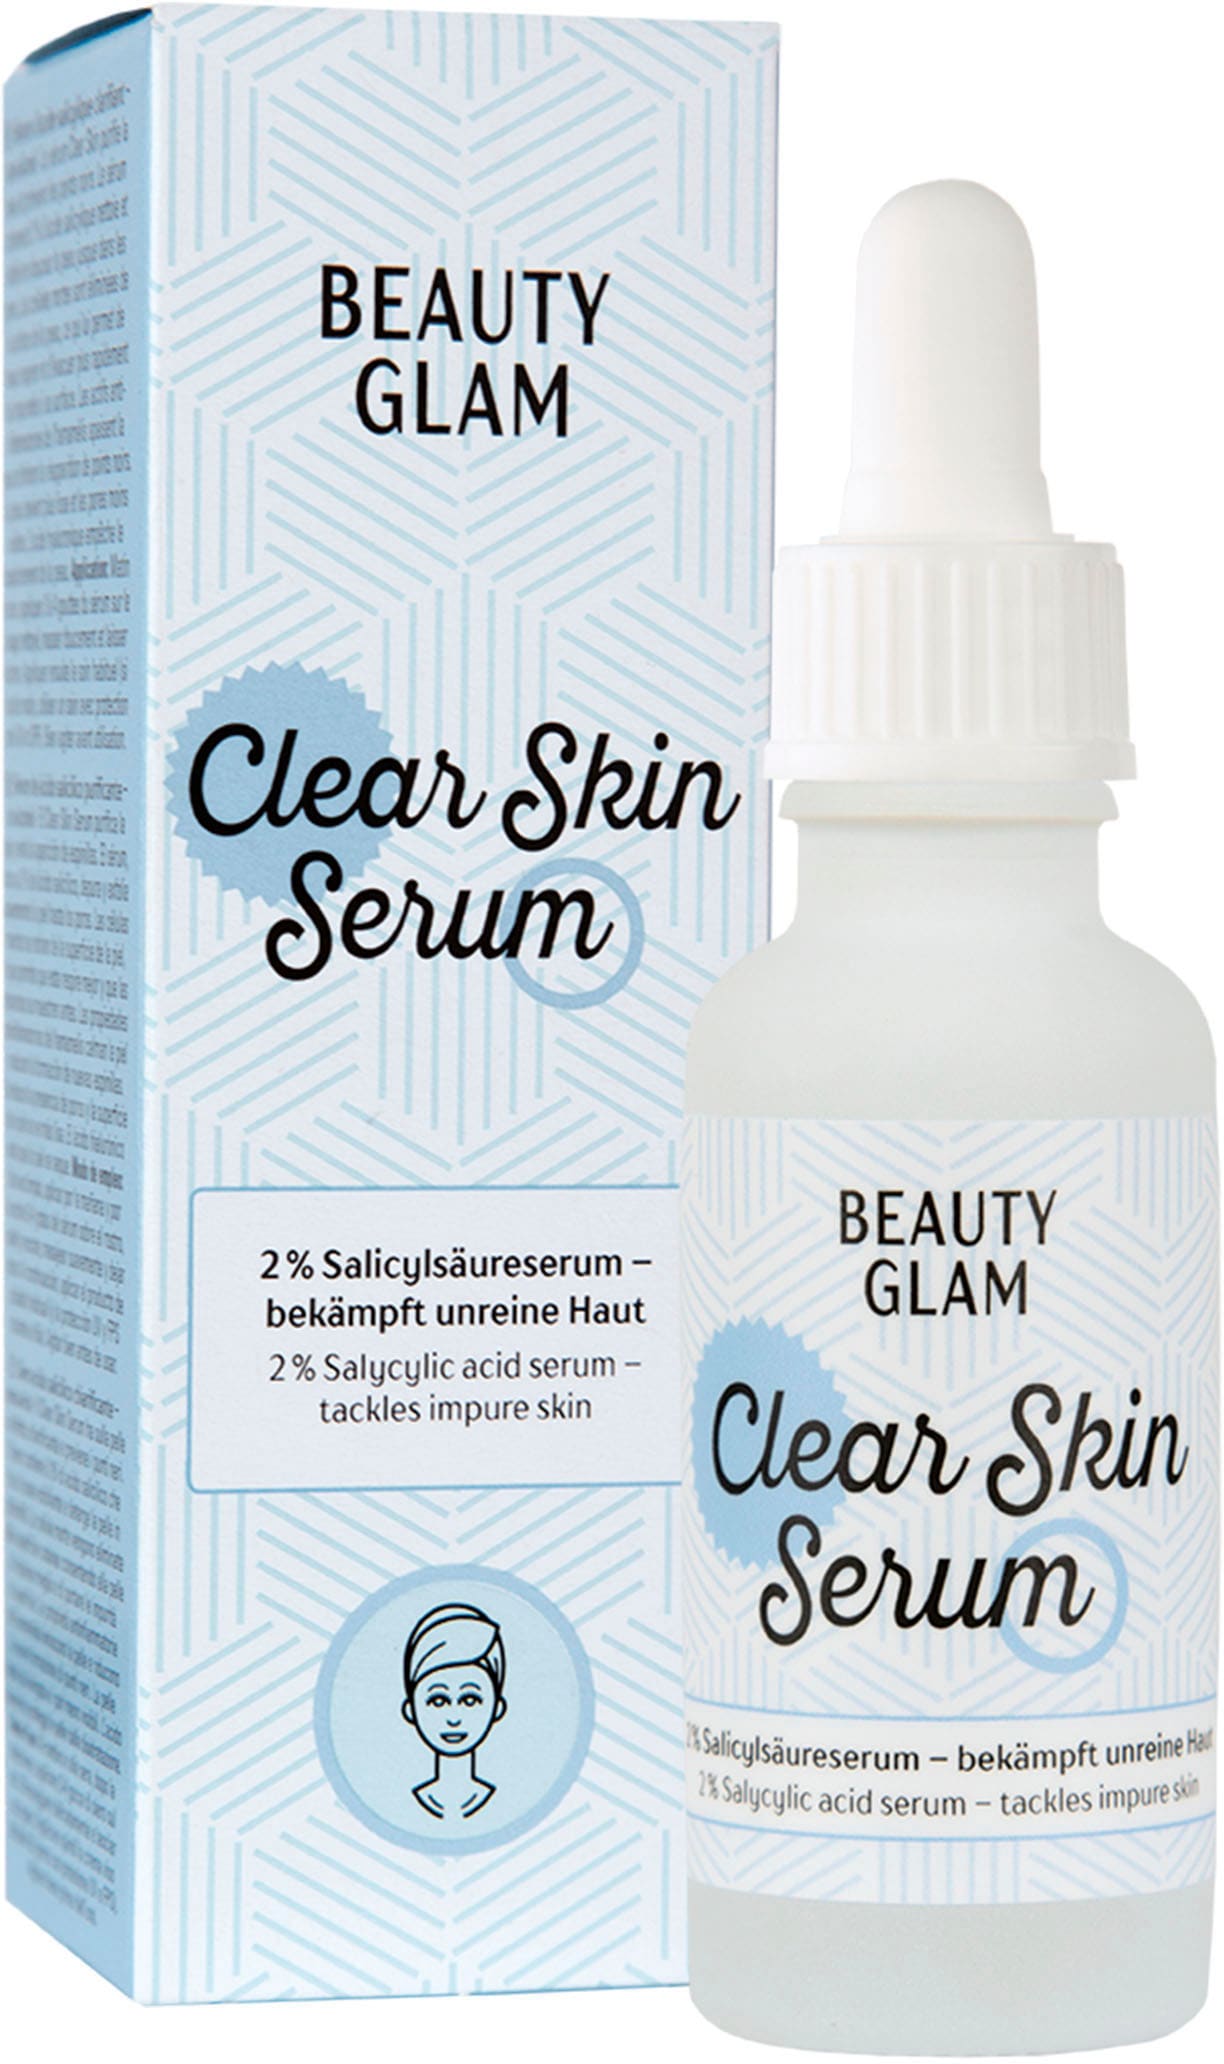 Gesichtsserum »Beauty Glam Clear Skin Serum«